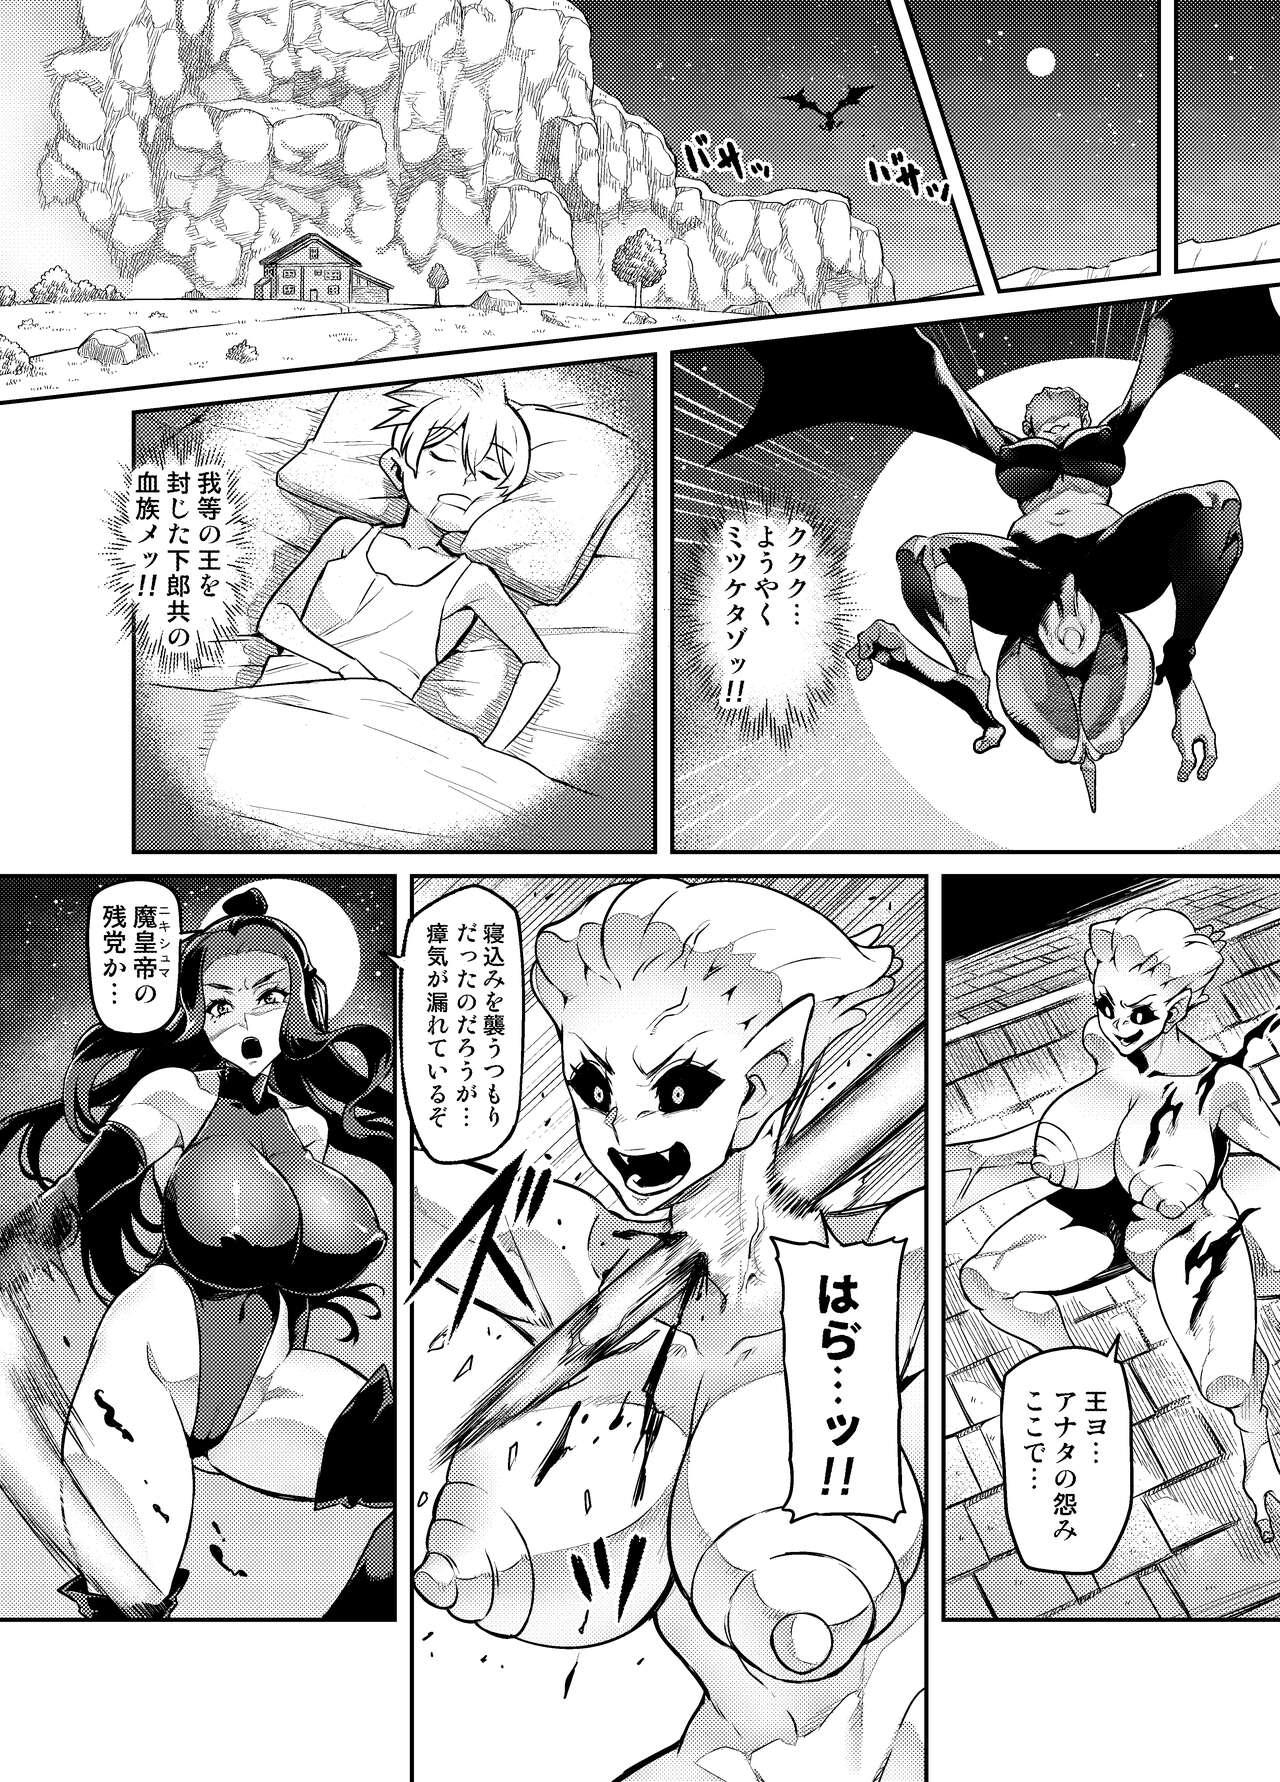 Hunks [Hatoba Akane] Maken no Elena ~Katte no Omoibito ni Takusareta Ko to no Koi ni Ochiru Majo~ Ch. 1-14 [Ongoing] - Original Star - Page 6